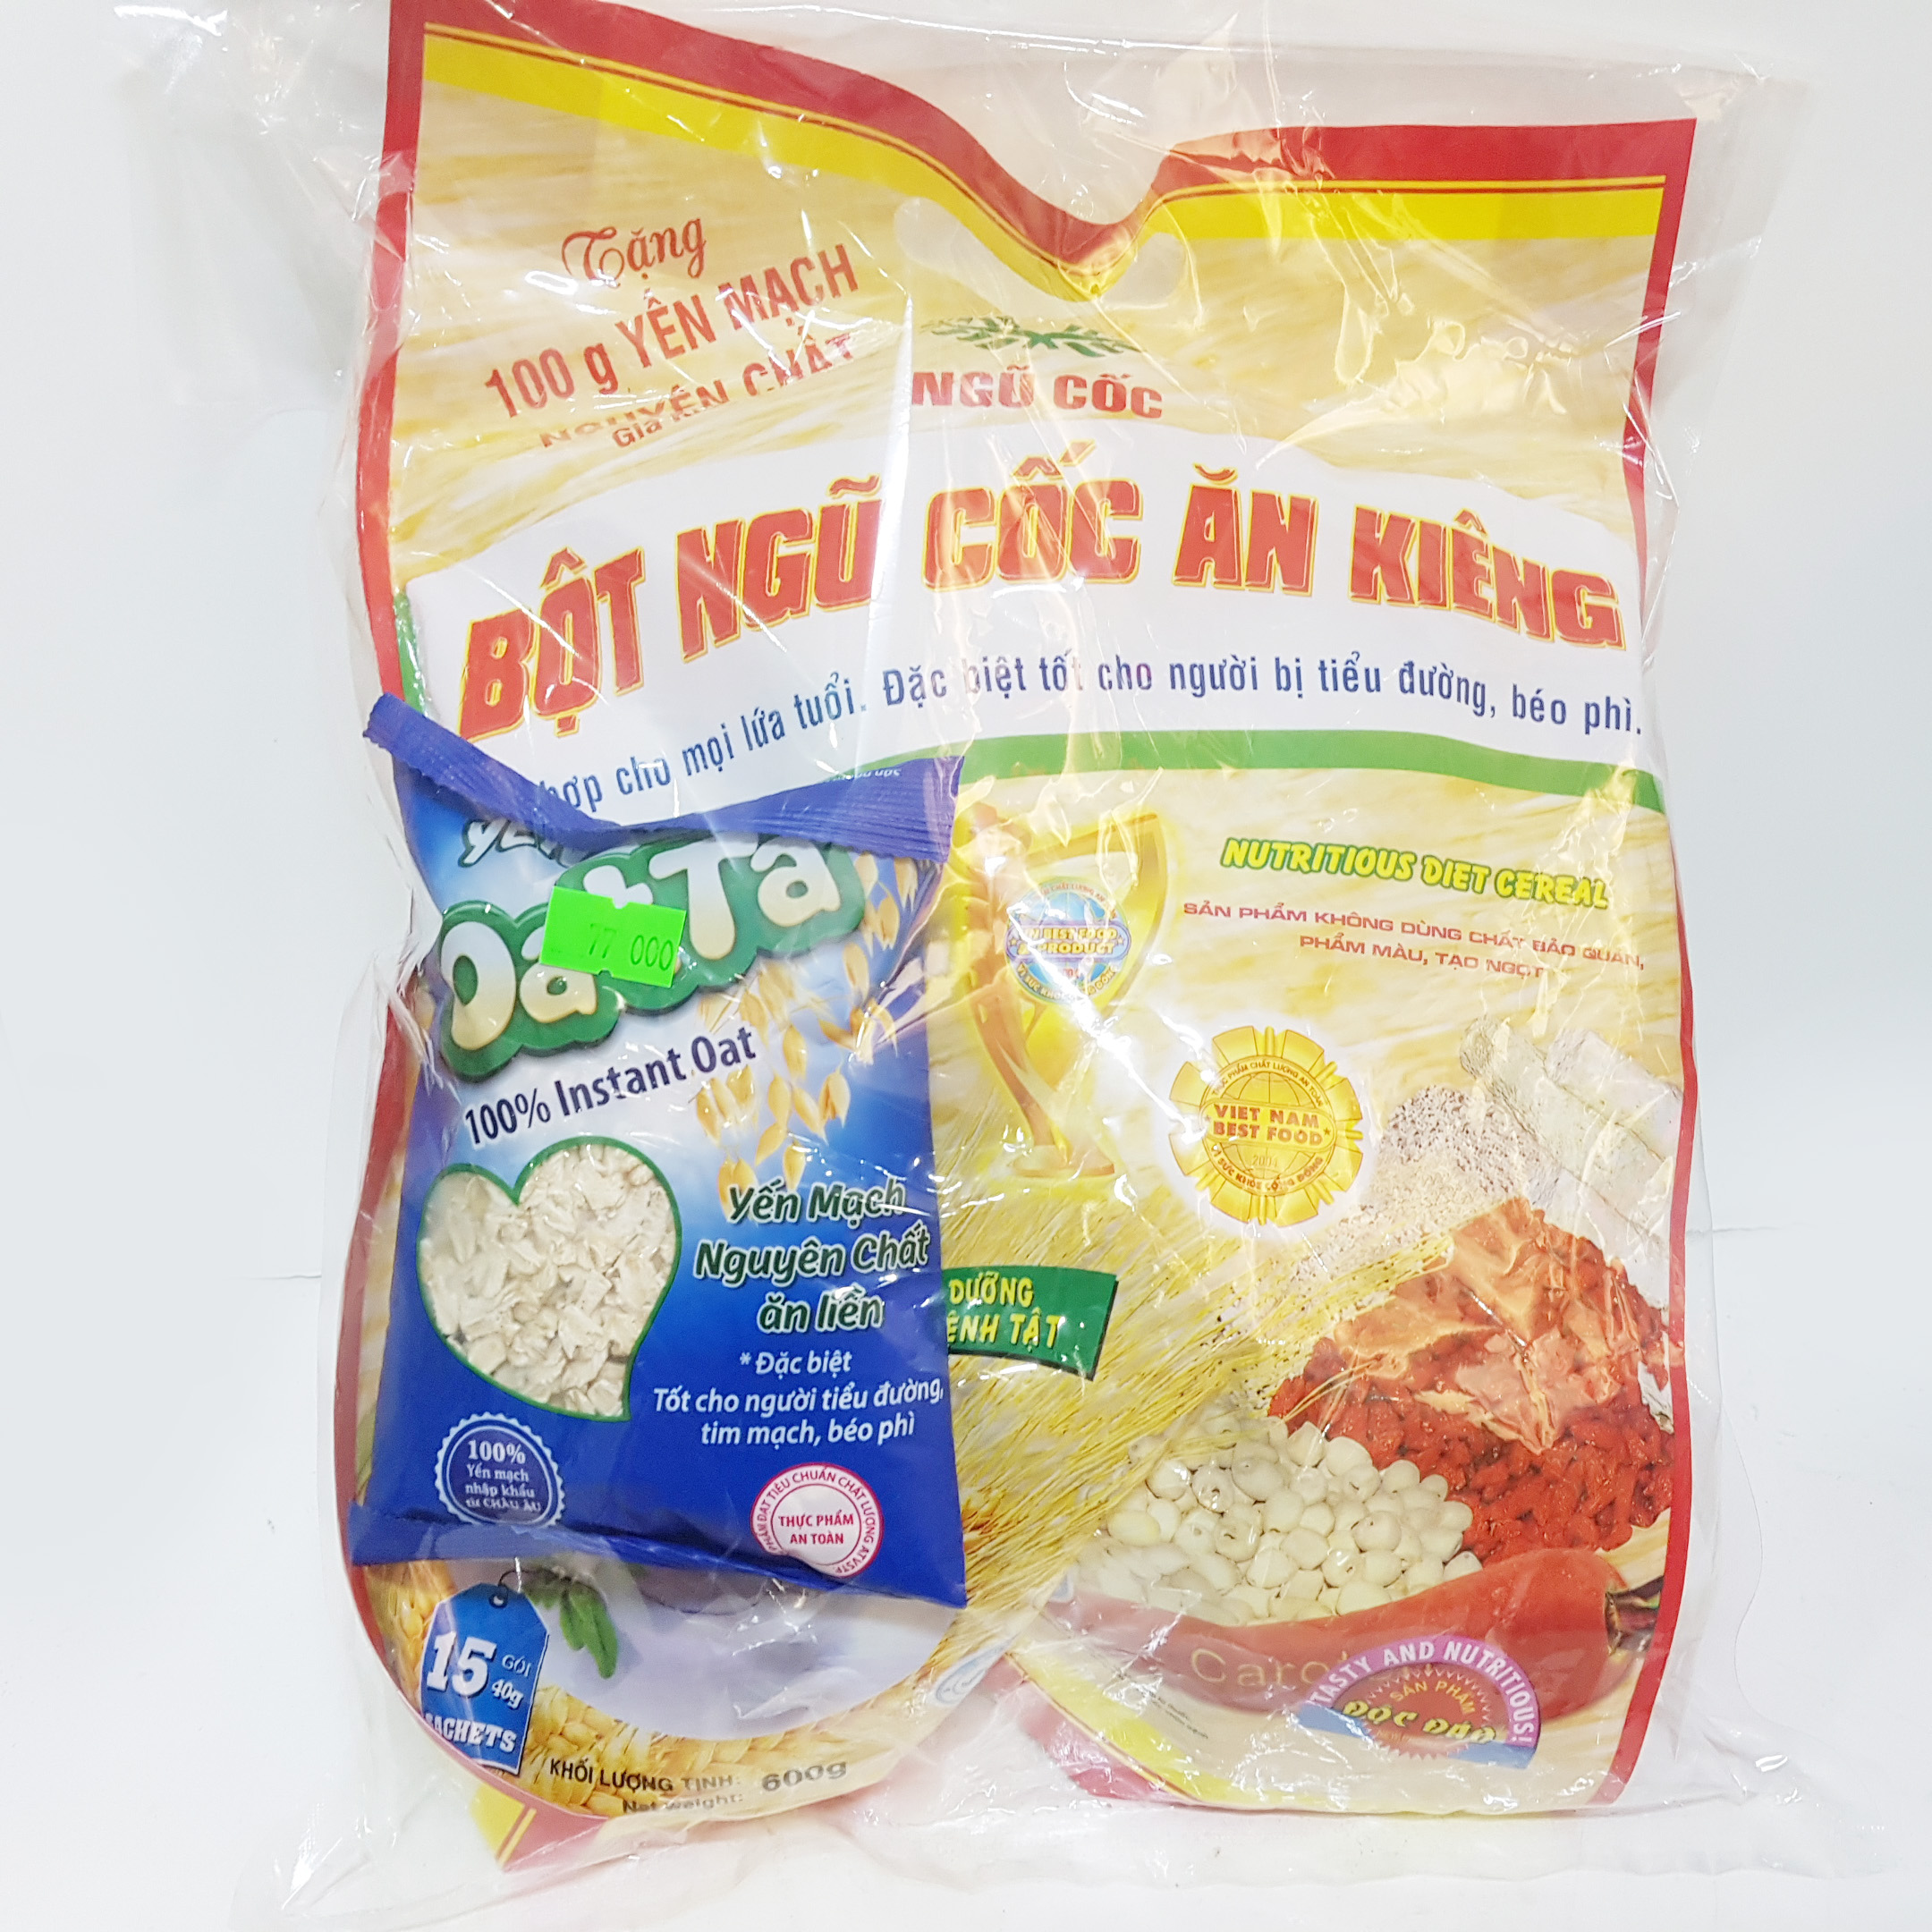 Bột ngũ cốc ăn kiêng Việt Đài - Tặng 100g yến mạch nguyên chất